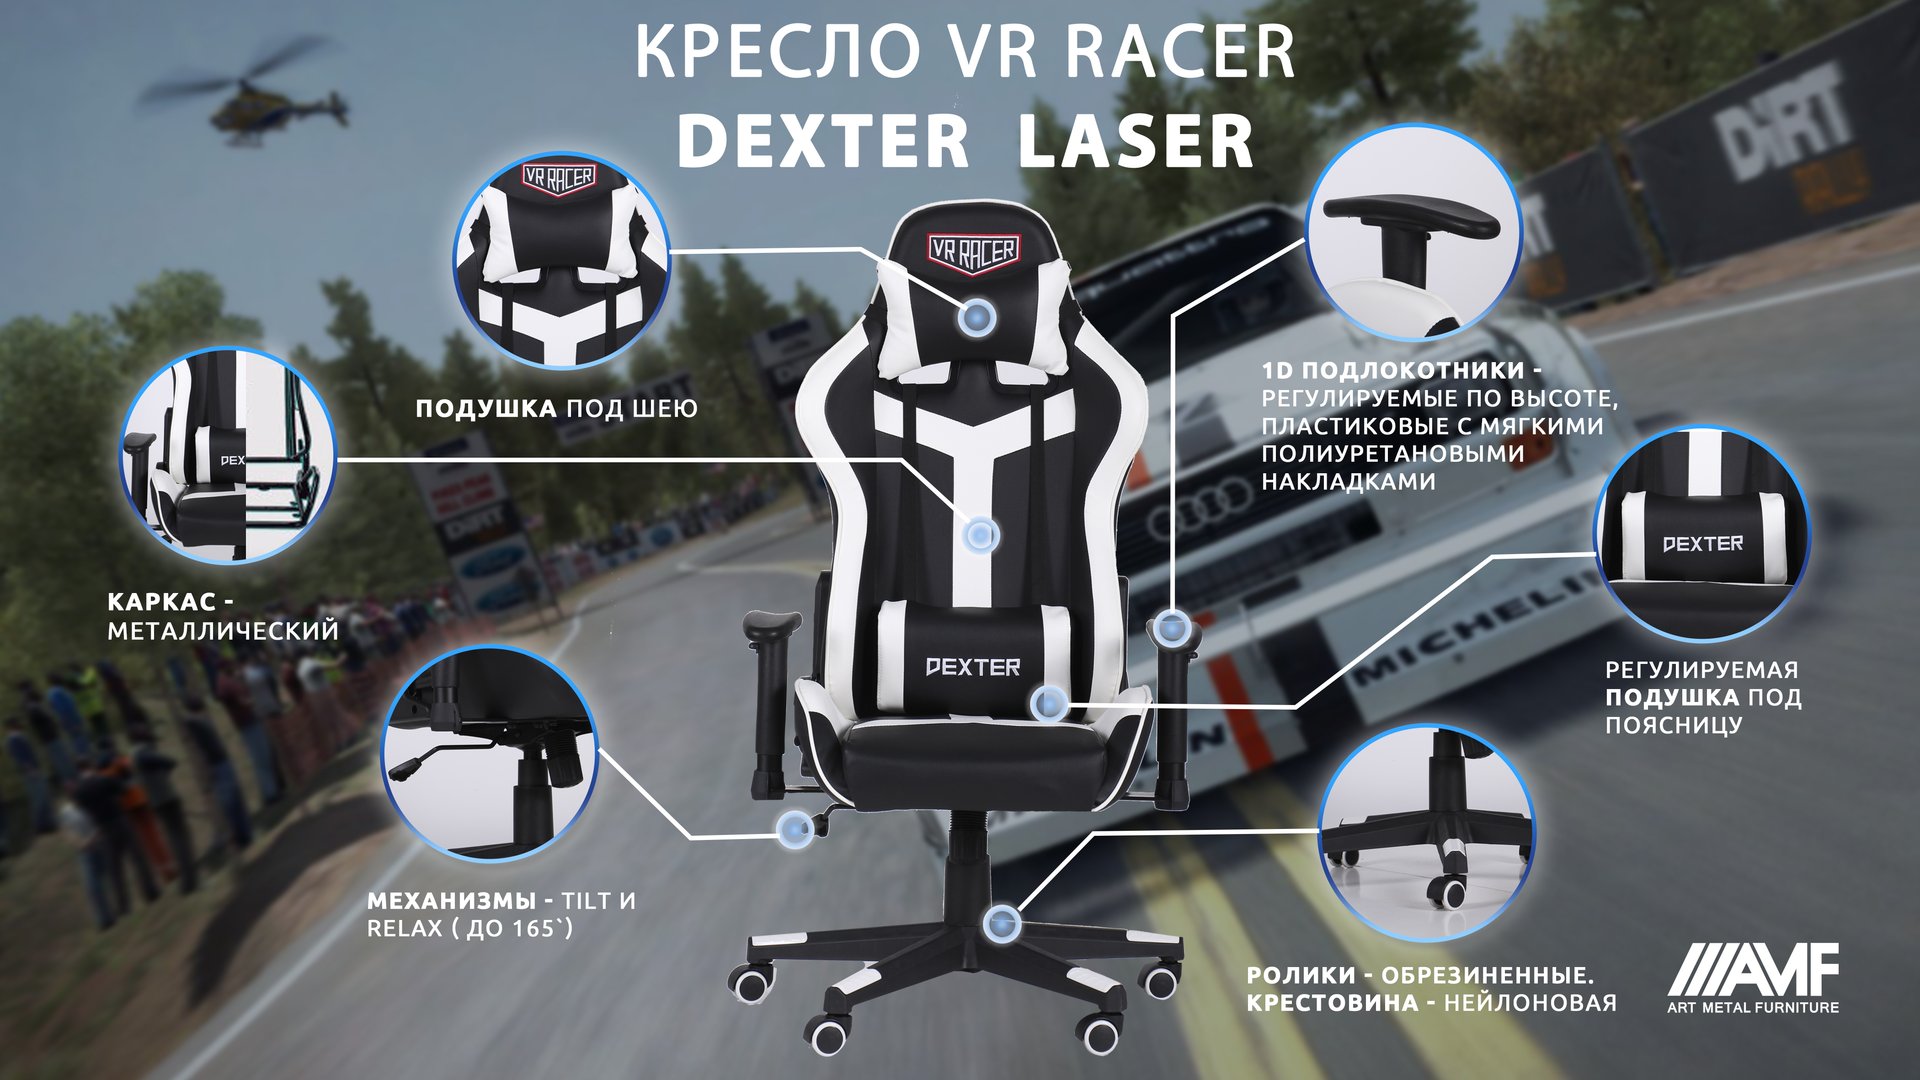 Кресло VR Racer Dexter Laser описание